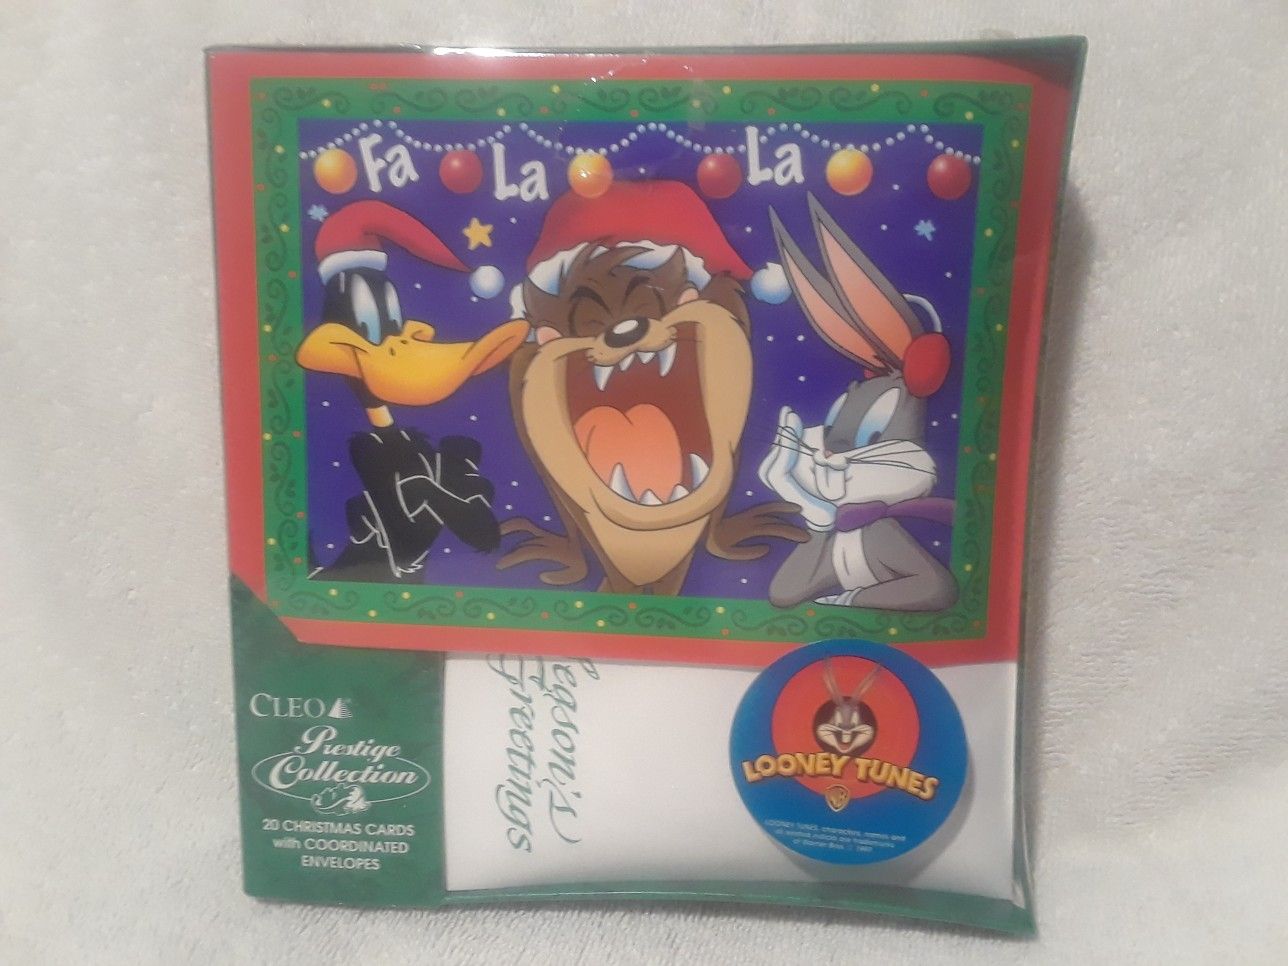 Vintage Looney tunes Fa La La greeting cards